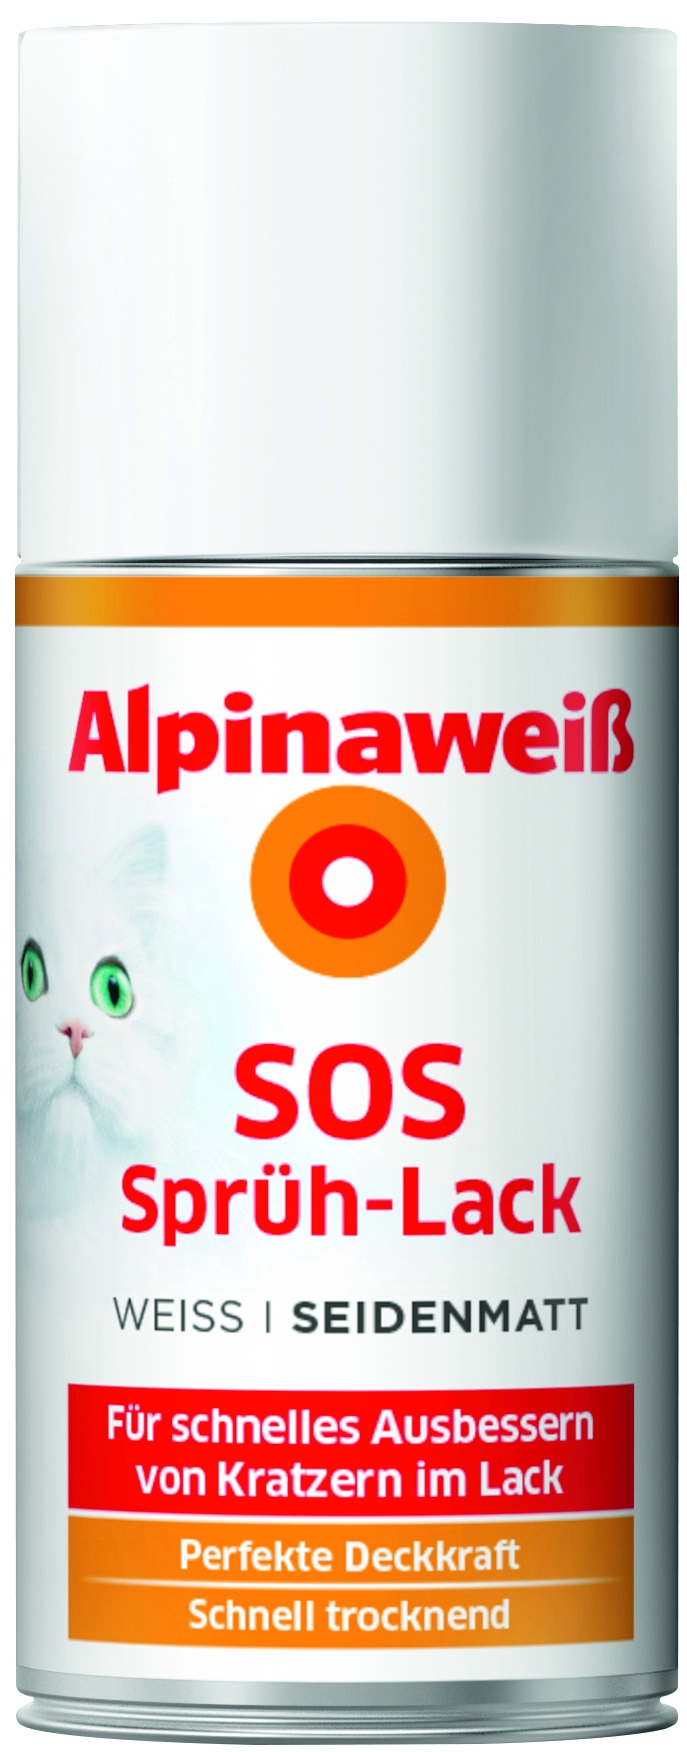 Alpinaweiß SOS Sprüh-Lack 150ml seidenmatt